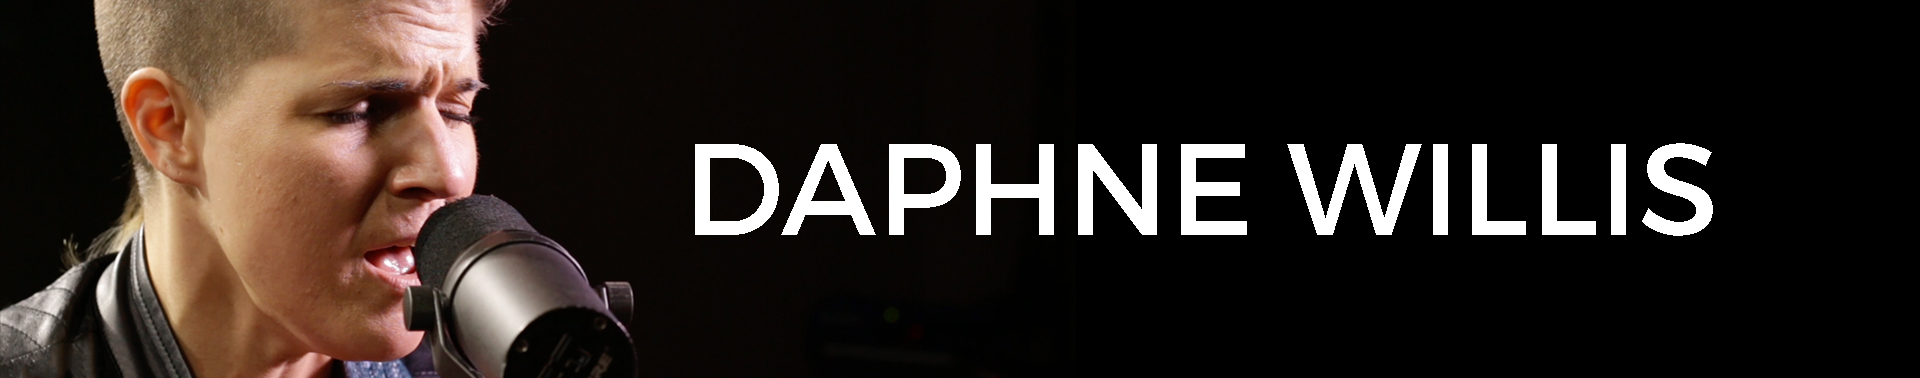 daphne banner